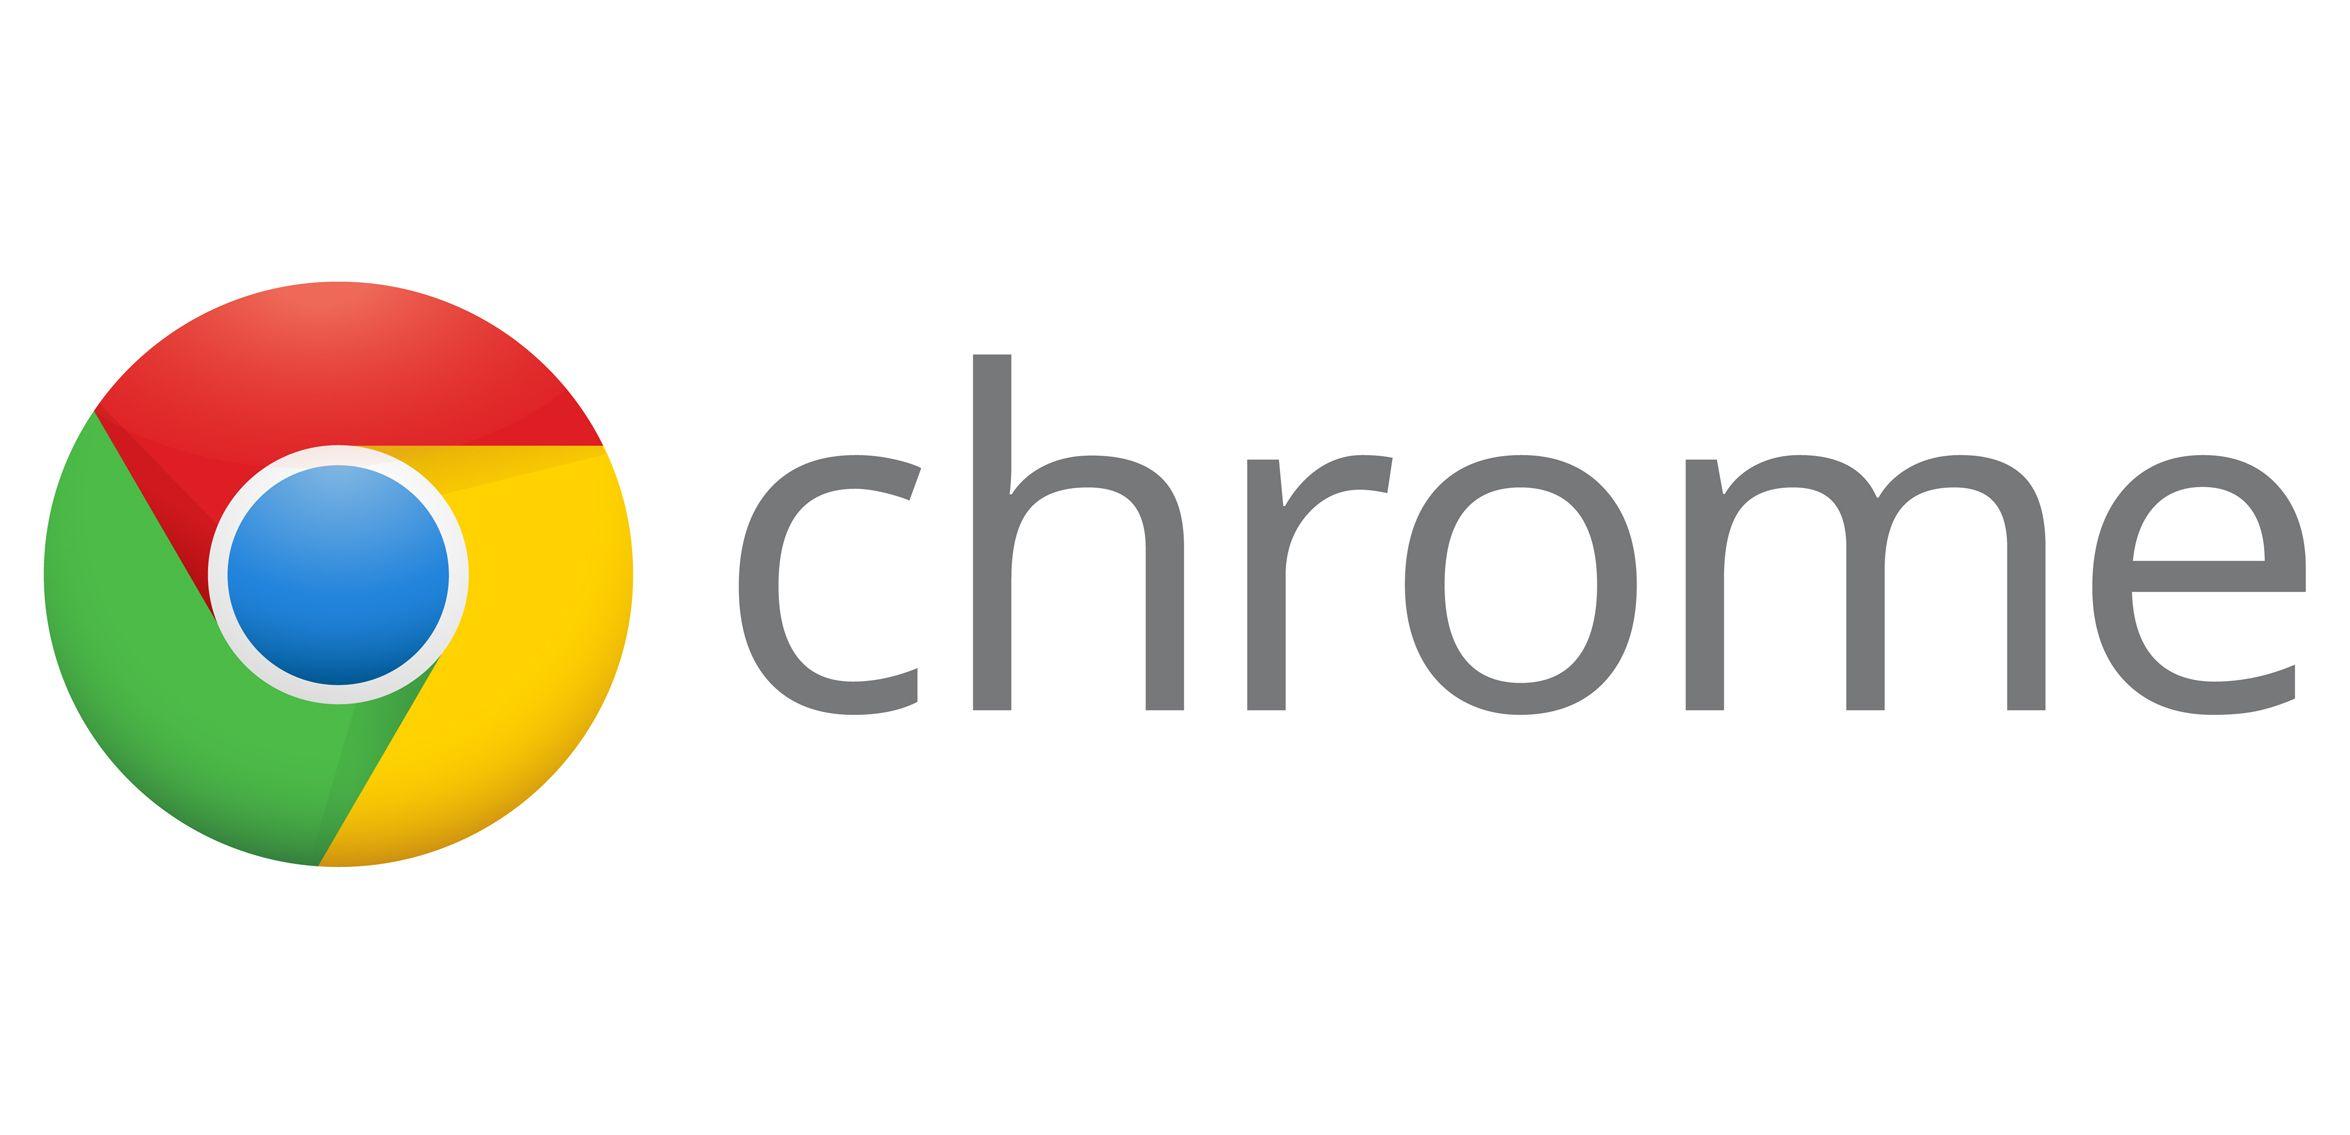 All Chrome Logo - Chrome Logo, Chrome Symbol, Meaning, History and Evolution